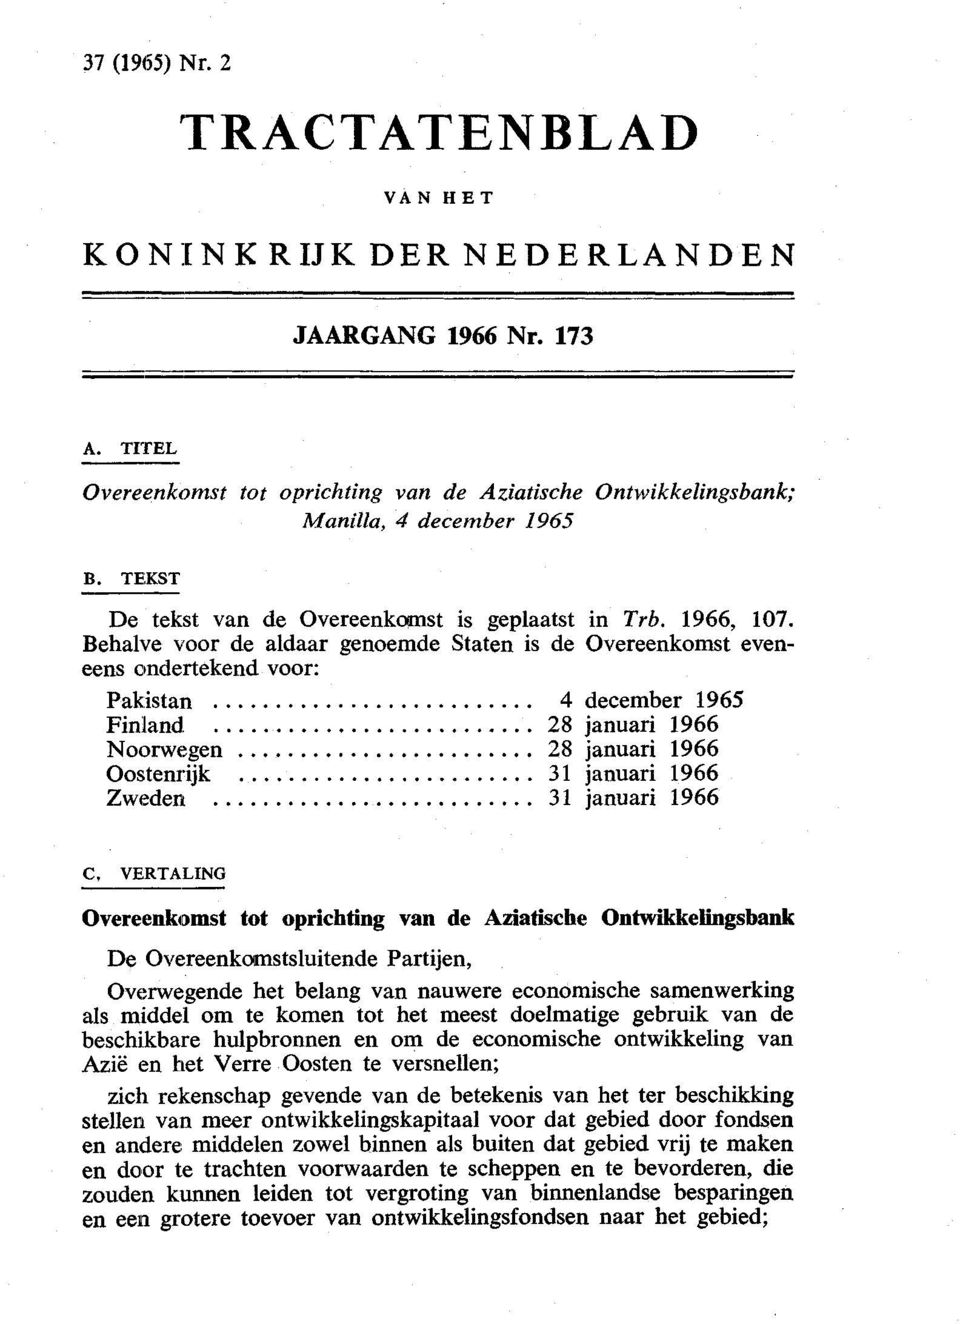 Behalve voor de aldaar genoemde Staten is de Overeenkomst eveneens ondertekend voor: Pakistani Finland Noorwegen Oostenrijk Zweden 4 december 1965 28 januari 1966 28 januari 1966 31 januari 1966 31